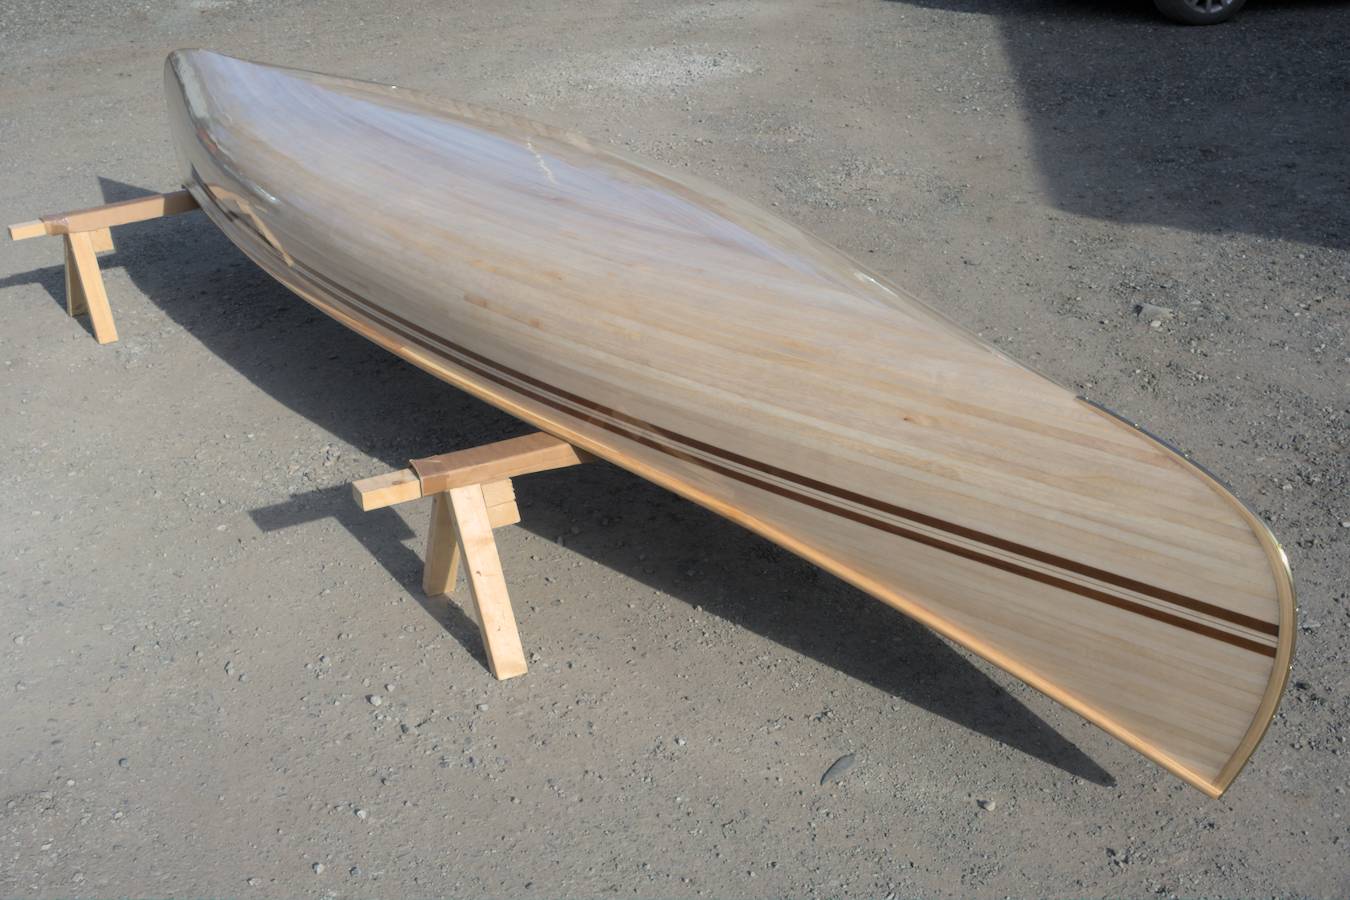 Ranger 15 canoe built using paulownia strips